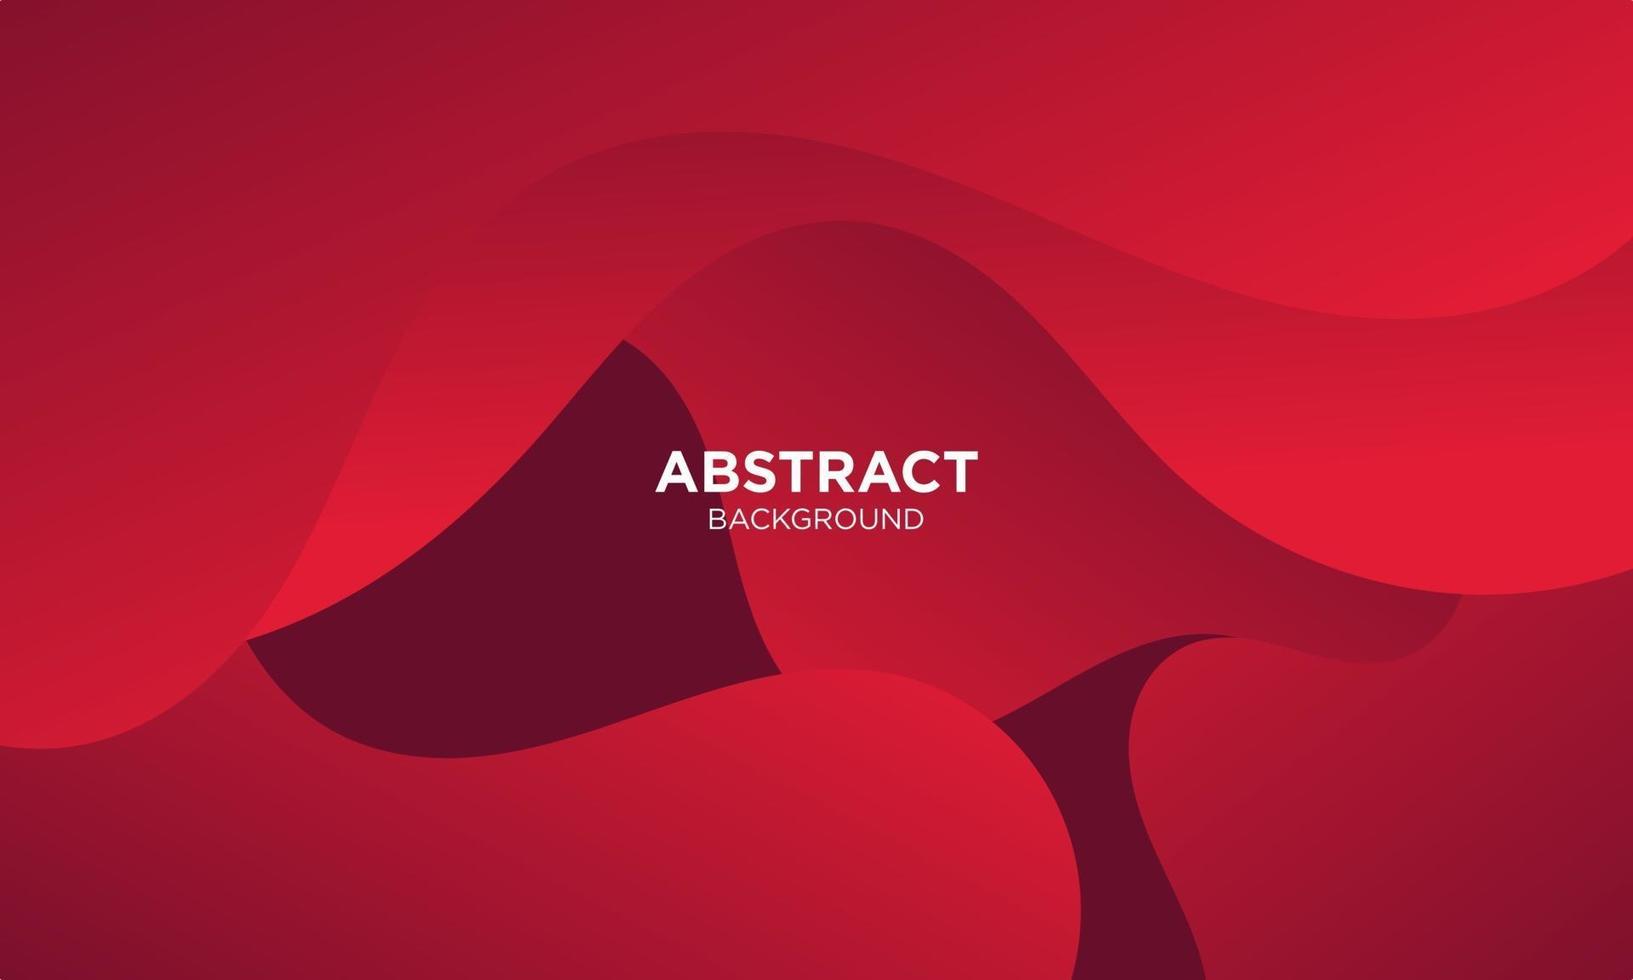 abstracte rode vloeistof golf achtergrond vector